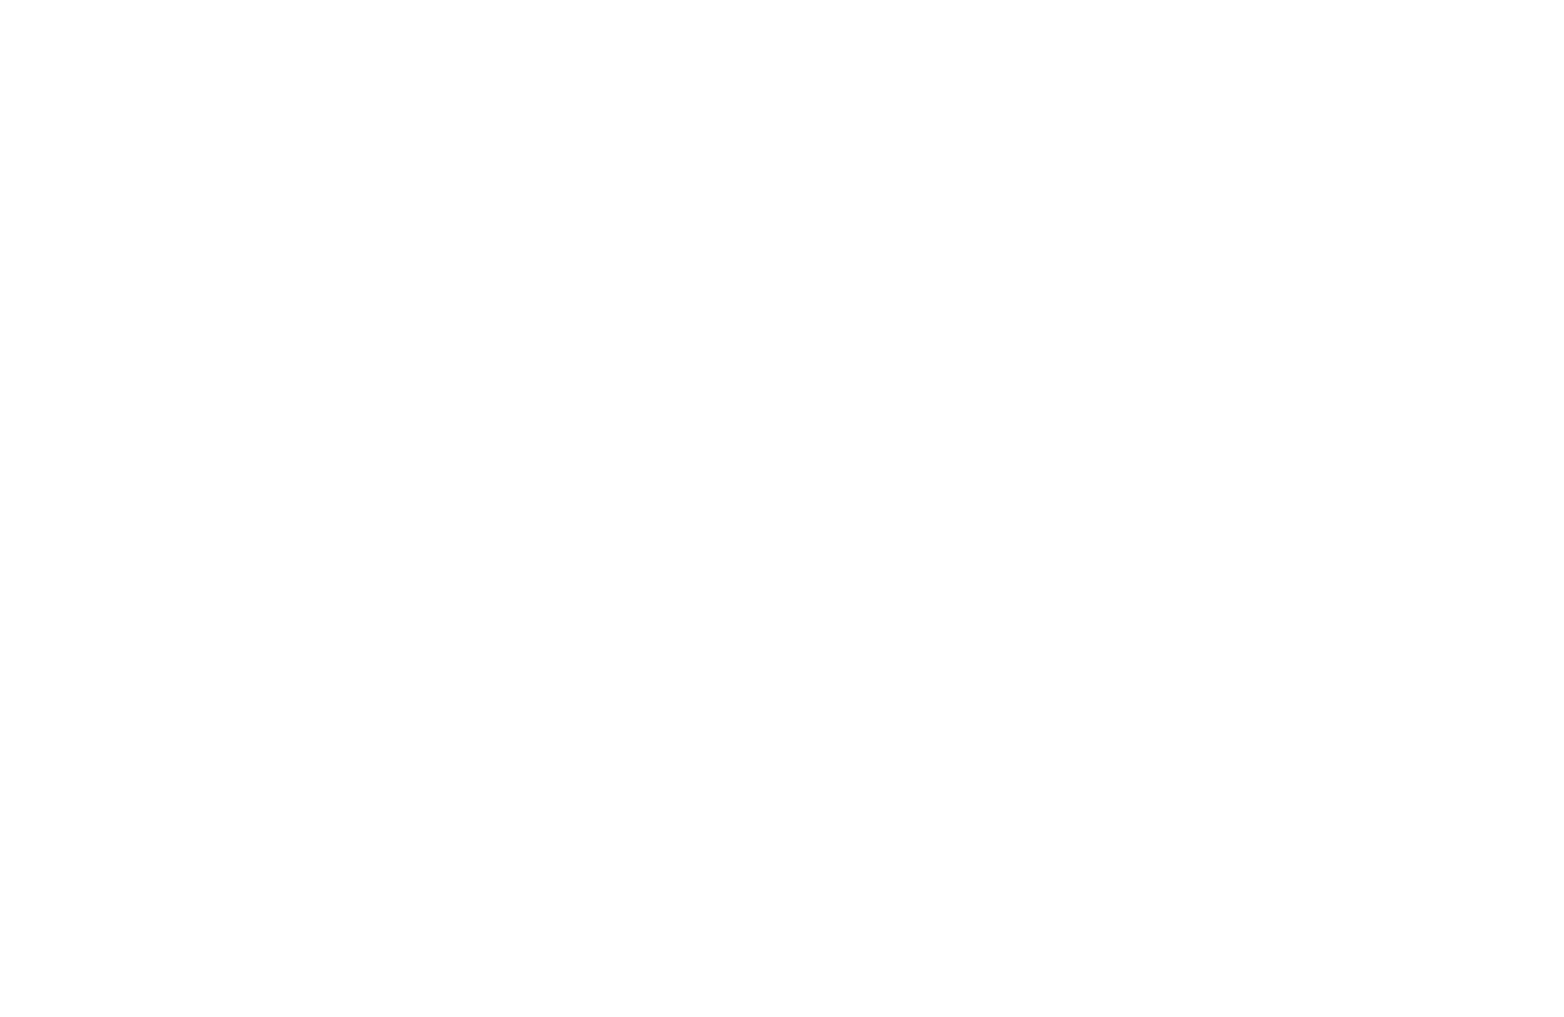 Immobel logo large for dark backgrounds (transparent PNG)